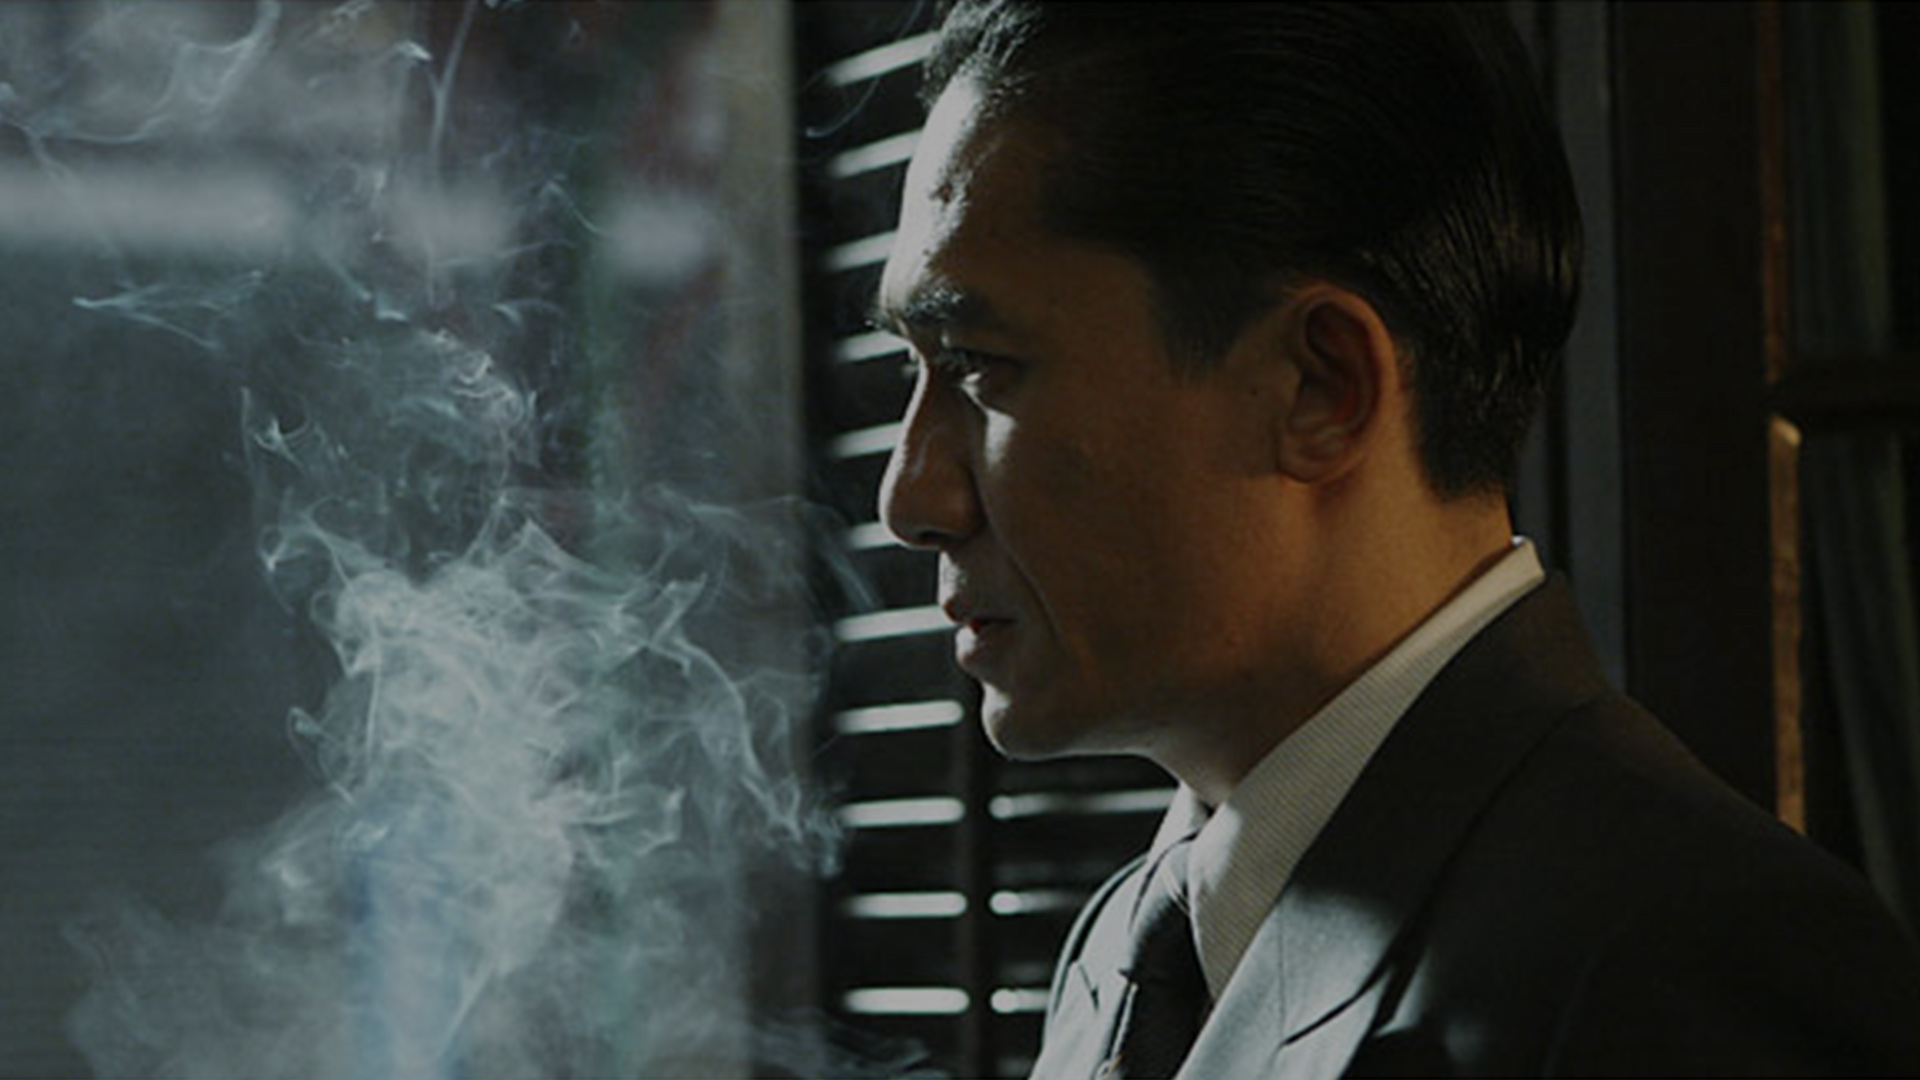 آقای یی در حال کشیدن سیگار در فیلم میل احتیاط